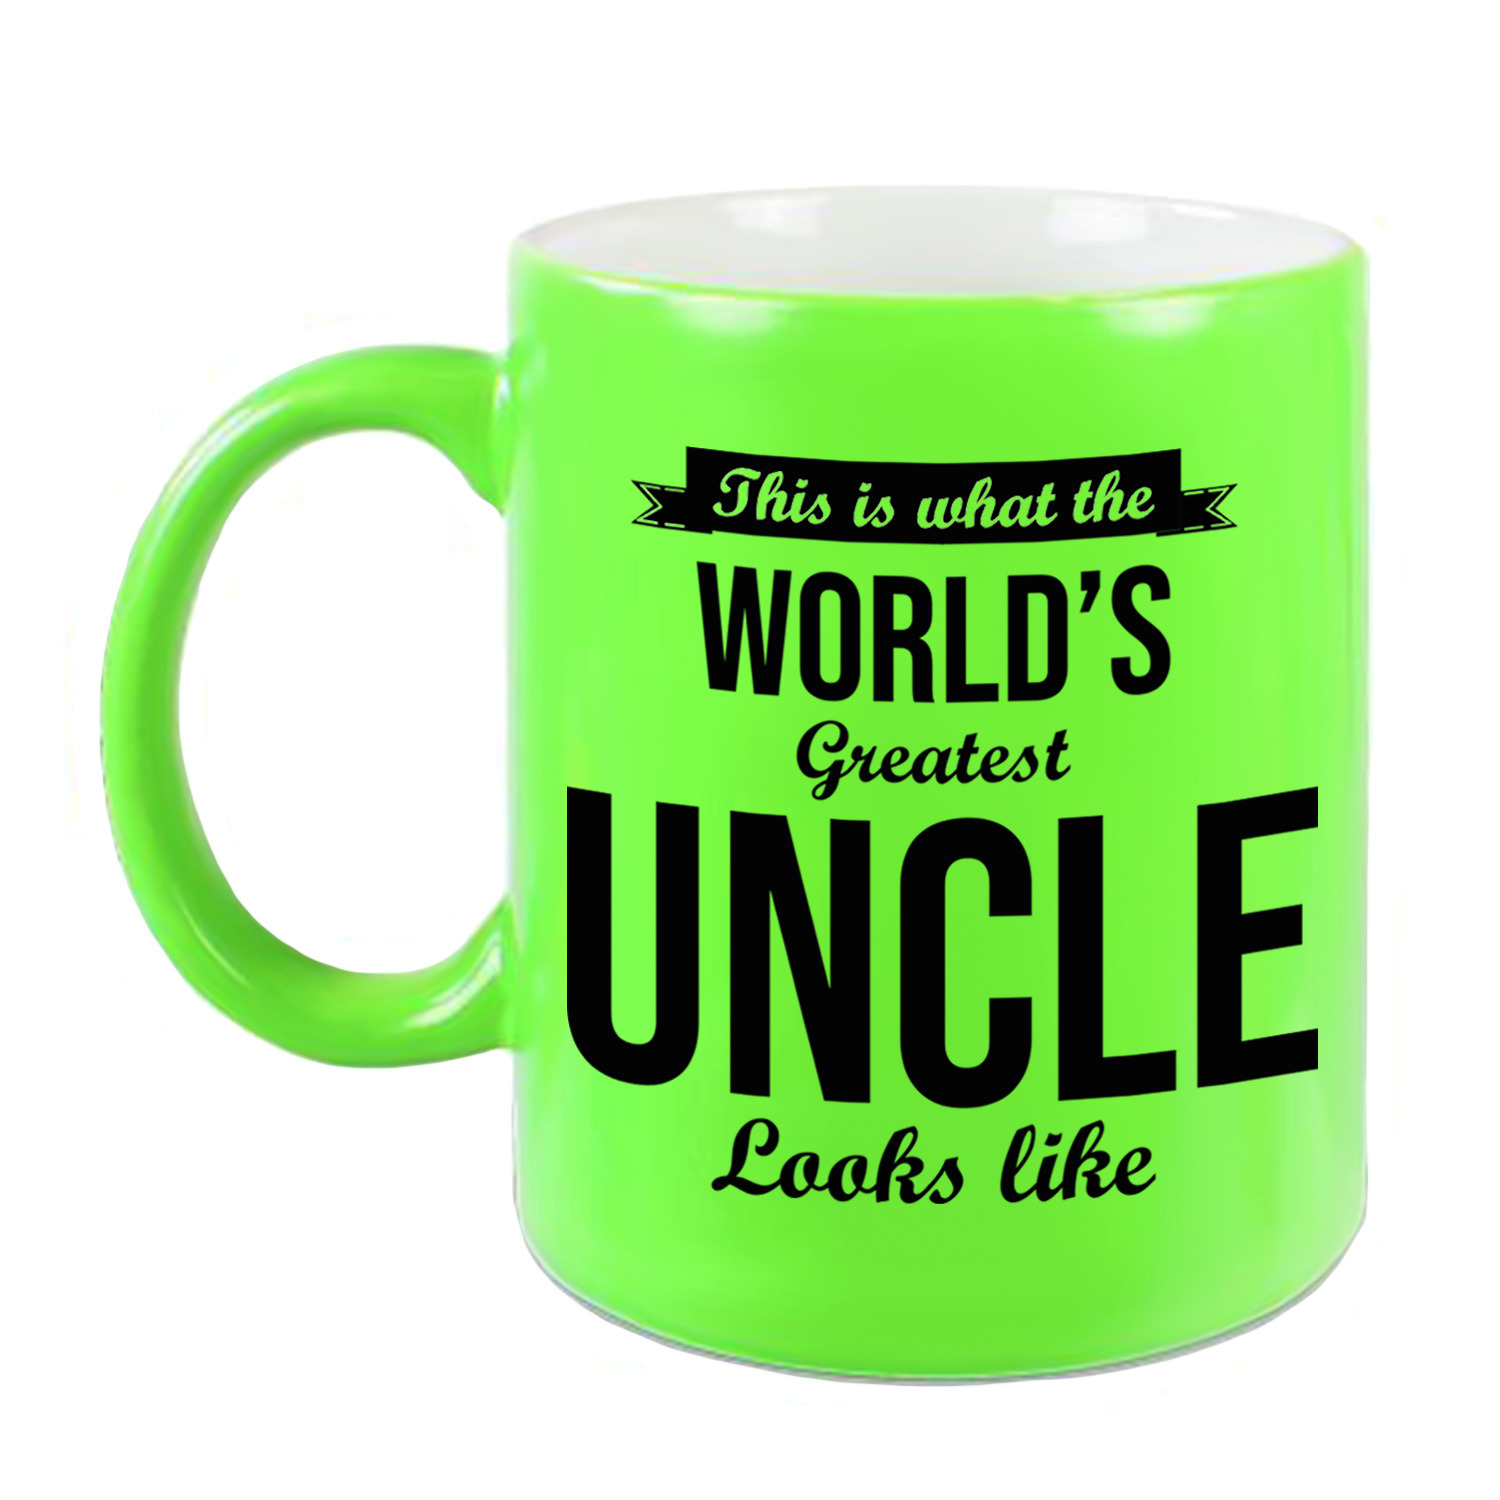 Oom cadeau mok-beker neon groen Worlds Greatest uncle